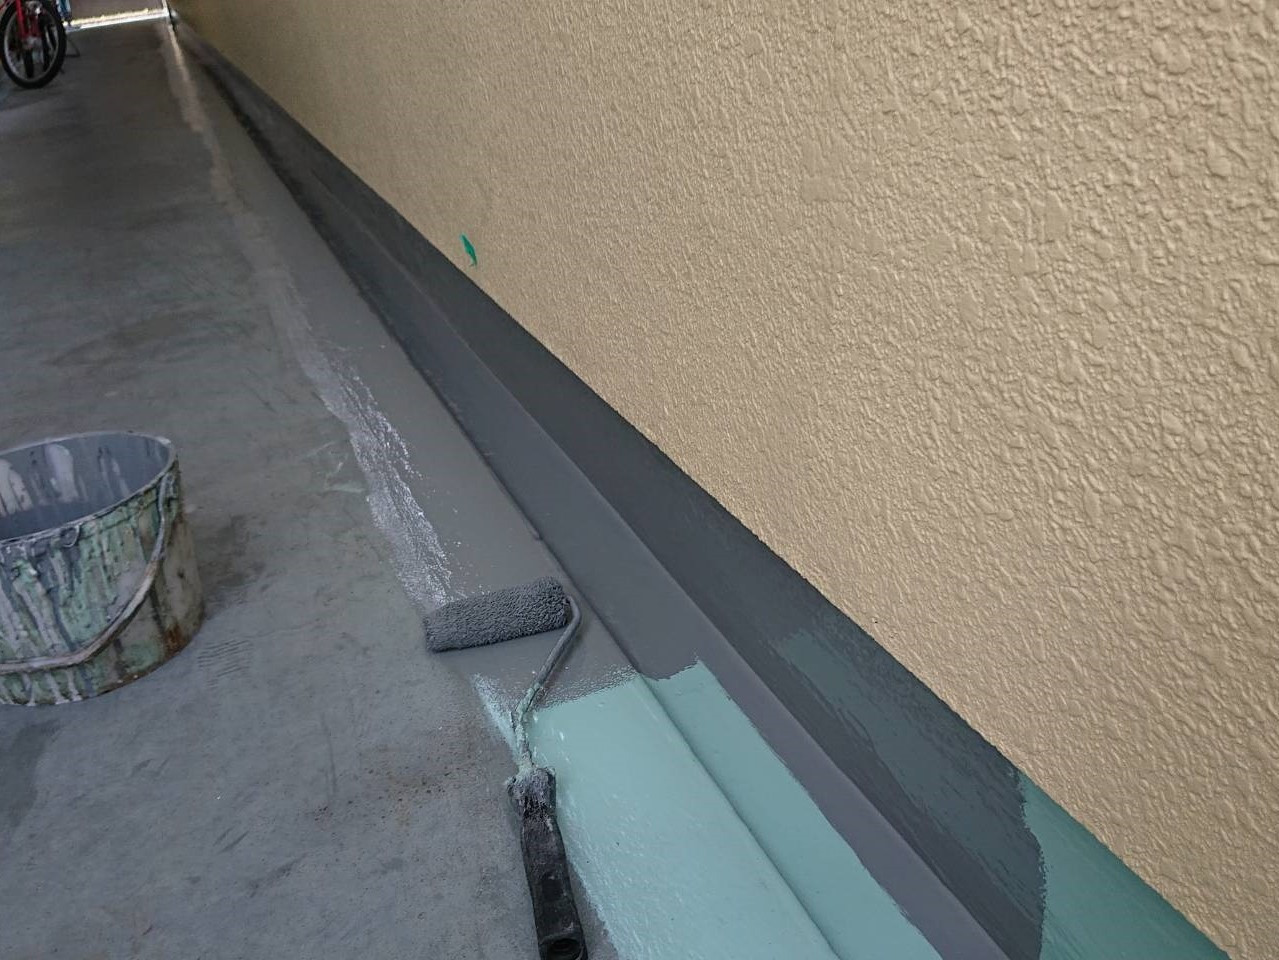 相模原市のM様邸集合住宅で外壁塗装・屋上防水工事の共用部床側溝ウレタントップコート塗りです。